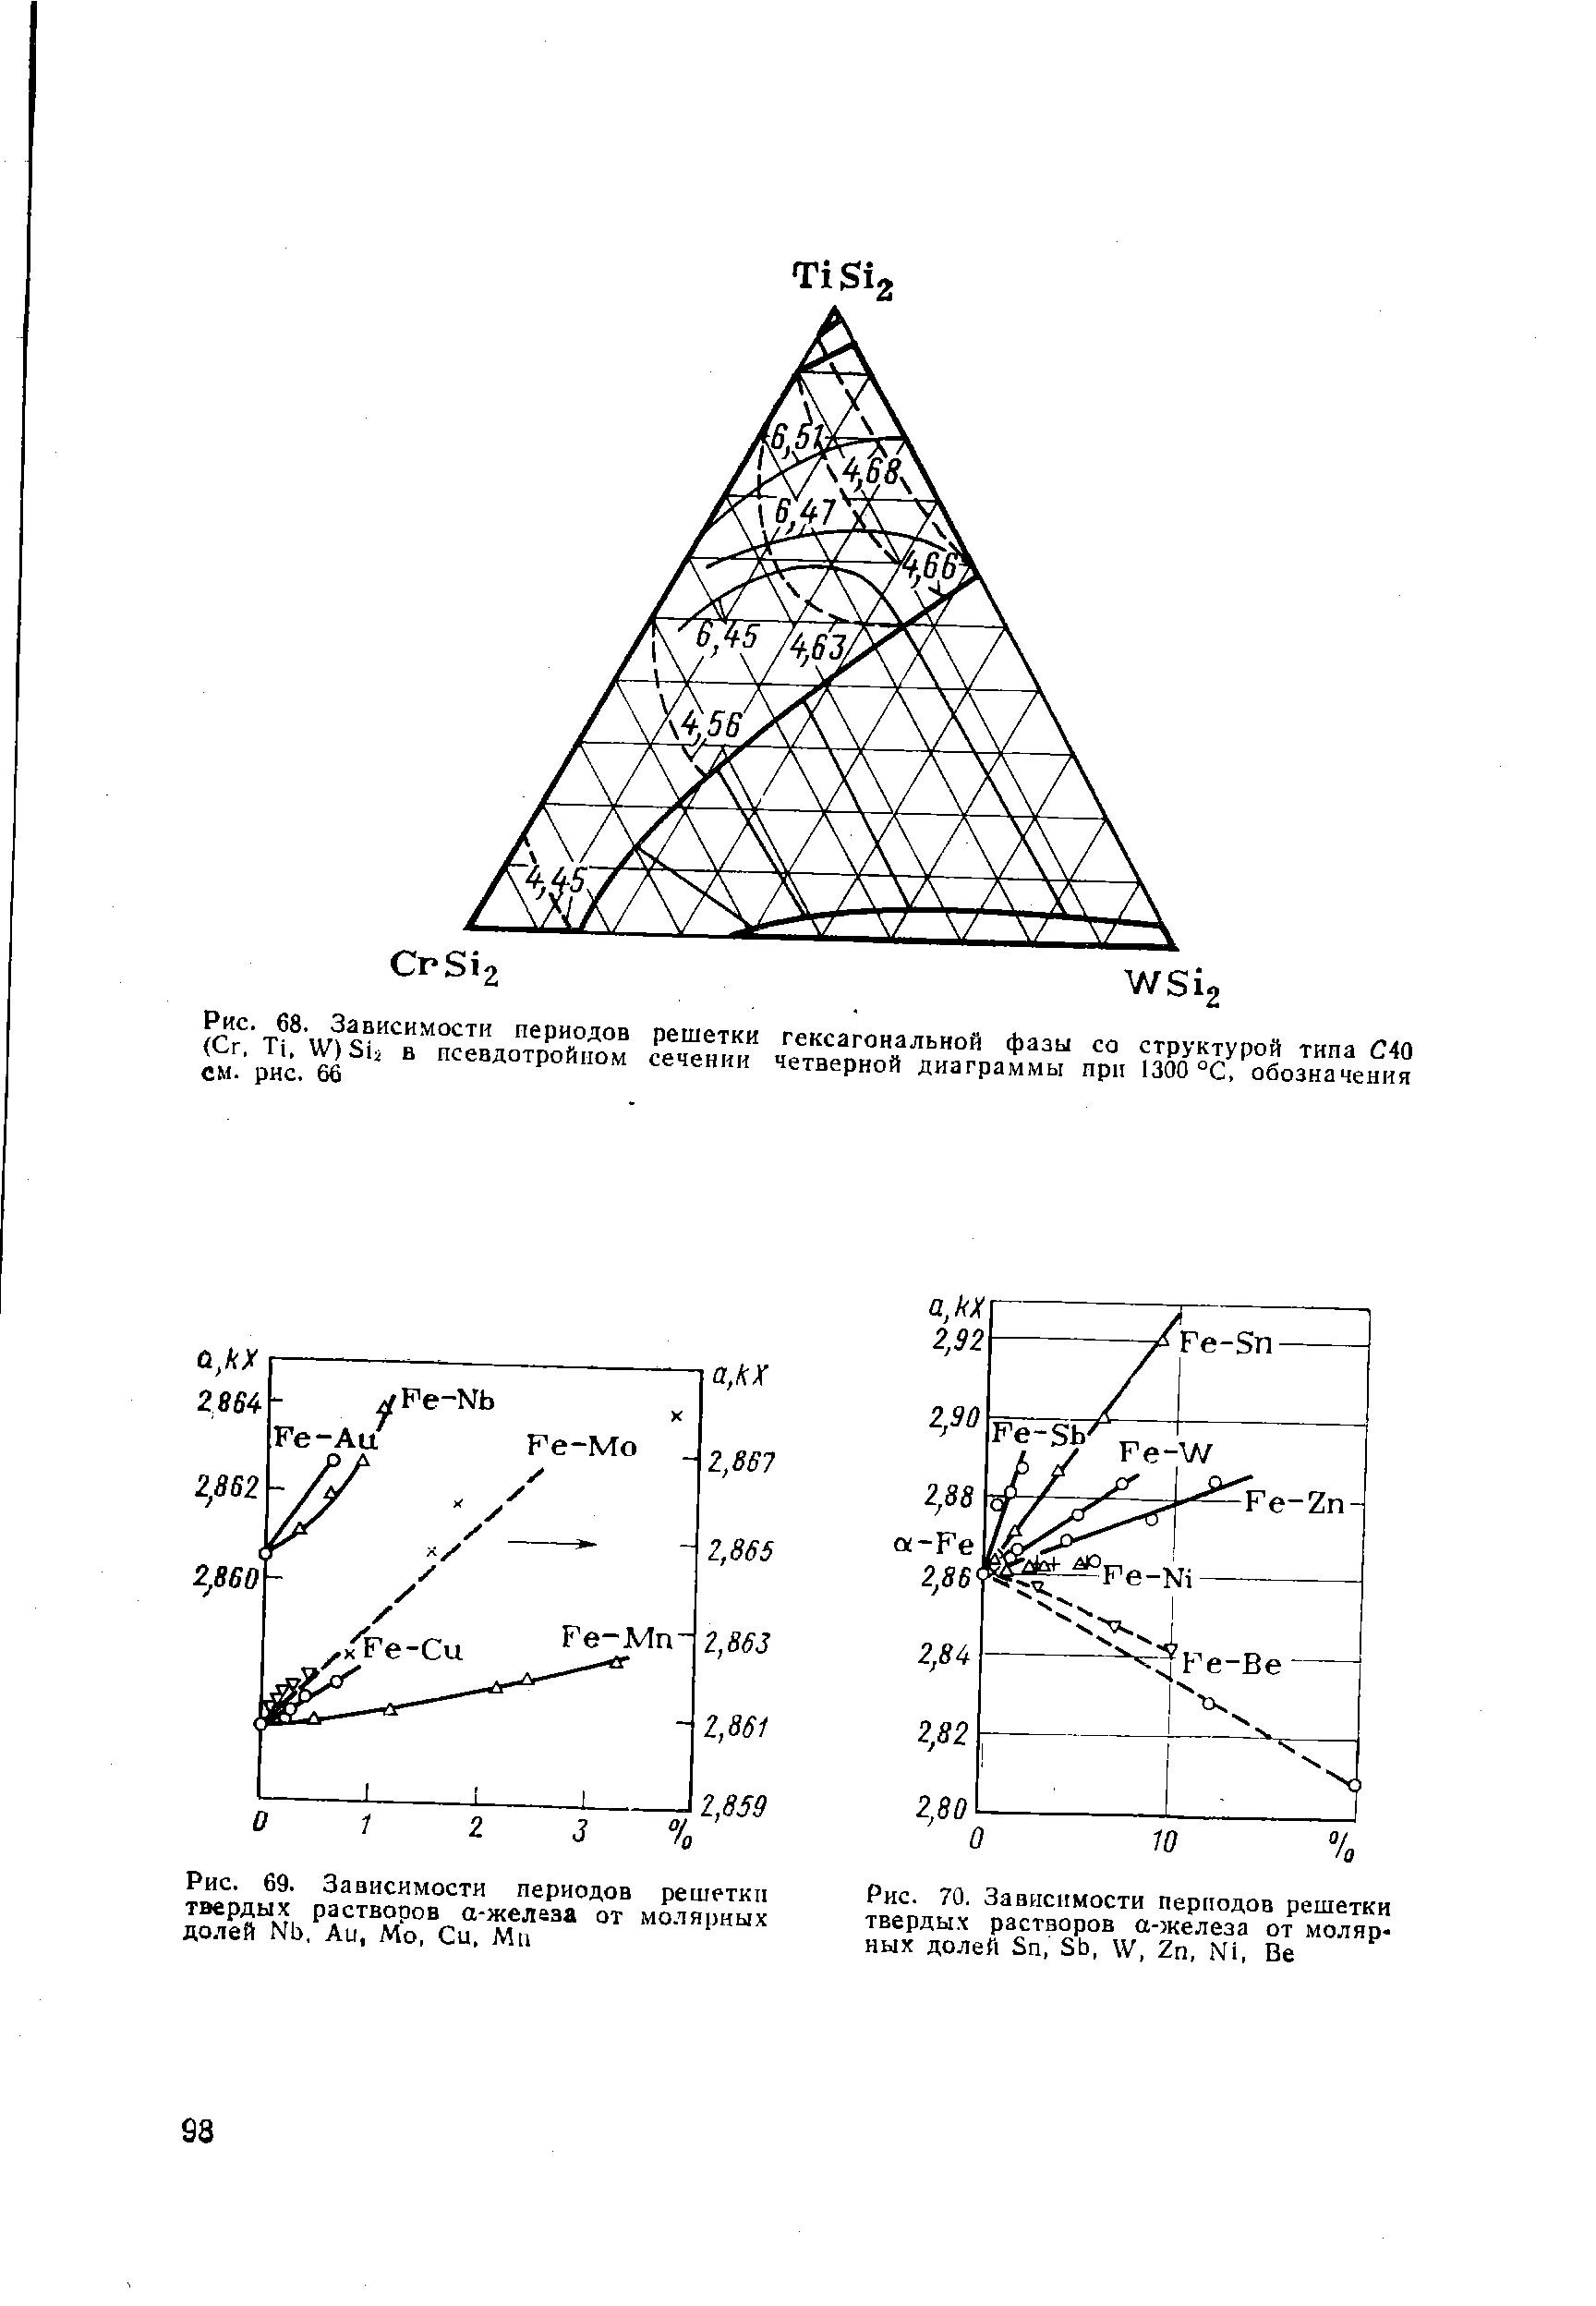 Рис. 70. Зависимости периодов решетки твердых растворов а-железа от молярных долей Sn, Sb, W, Zn, Ni, Be
